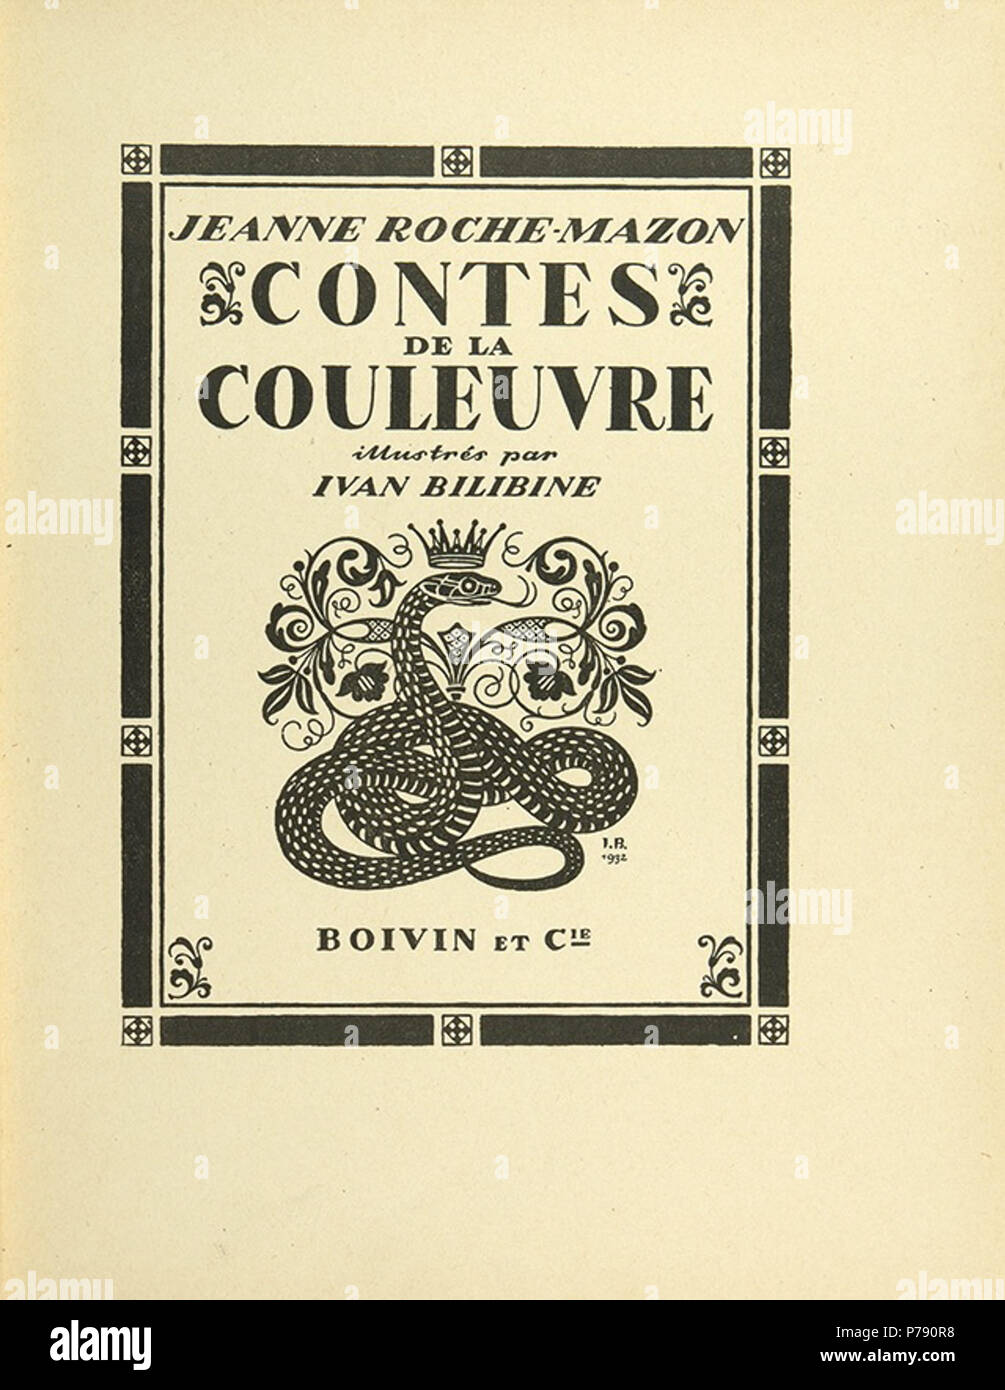 « » .-. , 1932 “Contes de la couleuvre” par Jeanne Roche-Mazon, illustres par I. Bilibine, Paris. 1932 33 Ivan Bilibin 208 Stock Photo